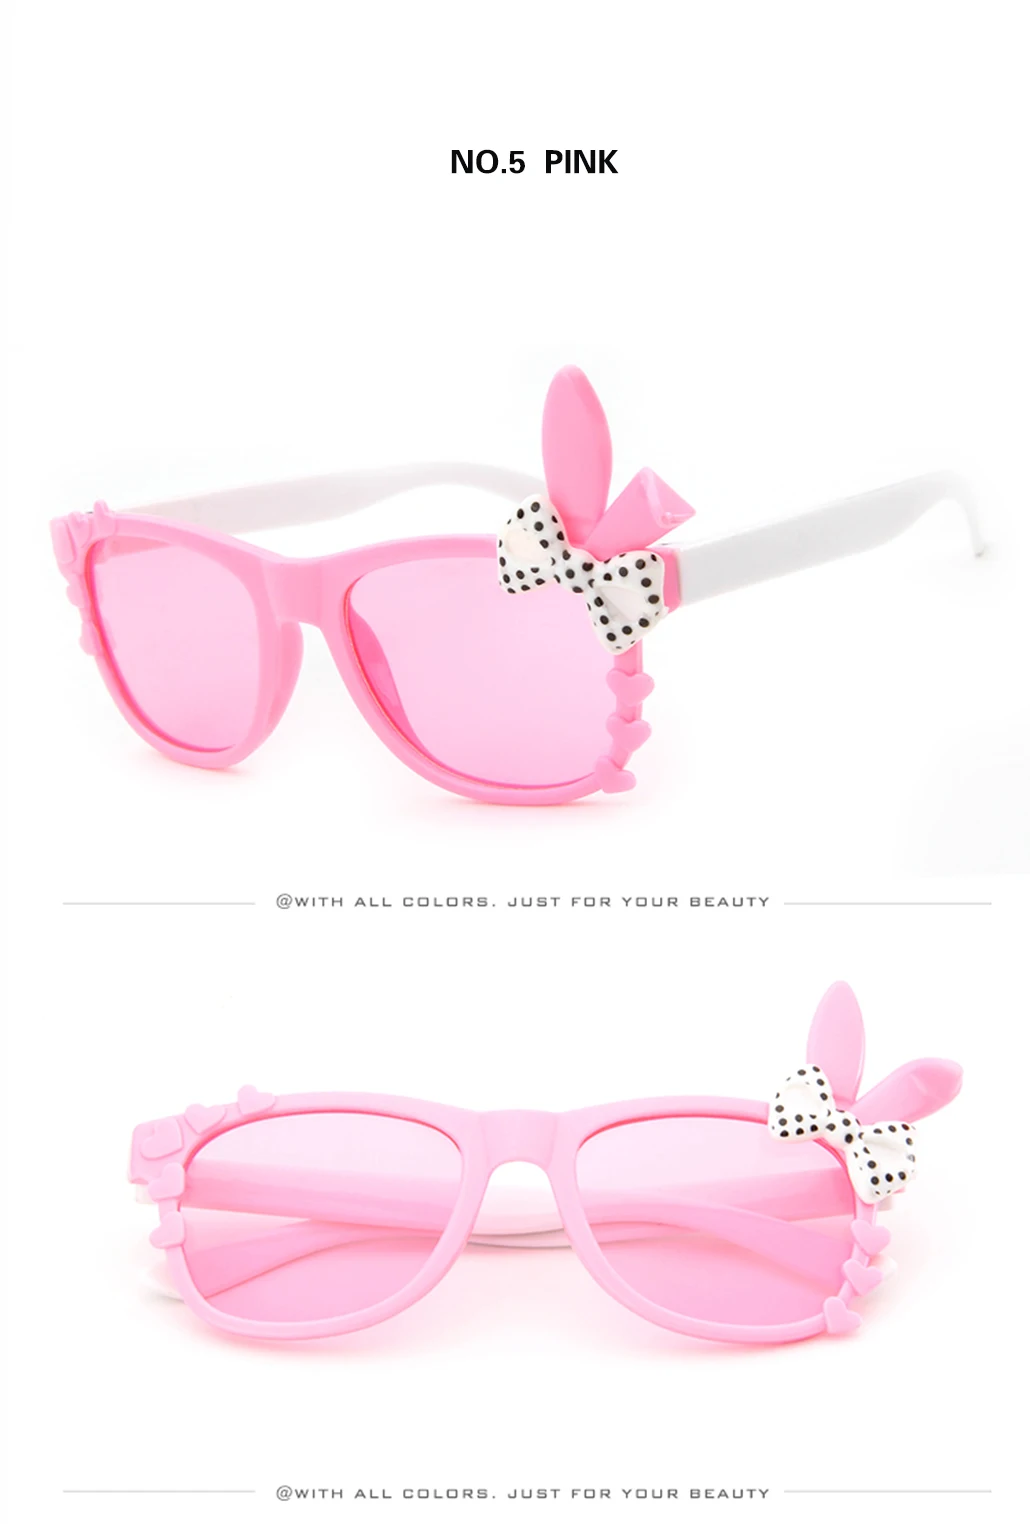 GY Snail/милые Солнцезащитные очки с кошачьим глазом для детей, фирменный дизайн для мальчиков, Модные солнцезащитные очки для девочек, антиуф-стаканы детские детское зеркало, УФ